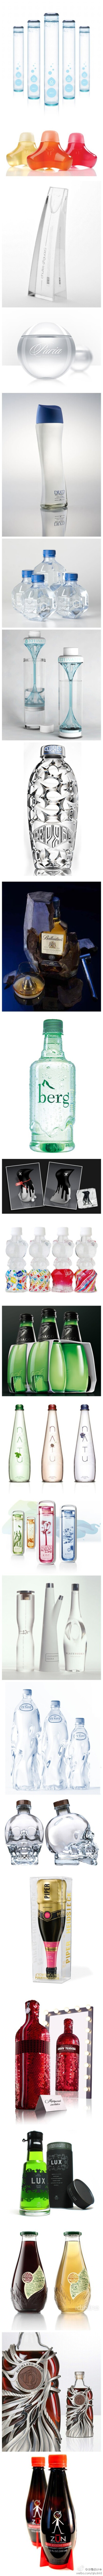 24款创意瓶子设计